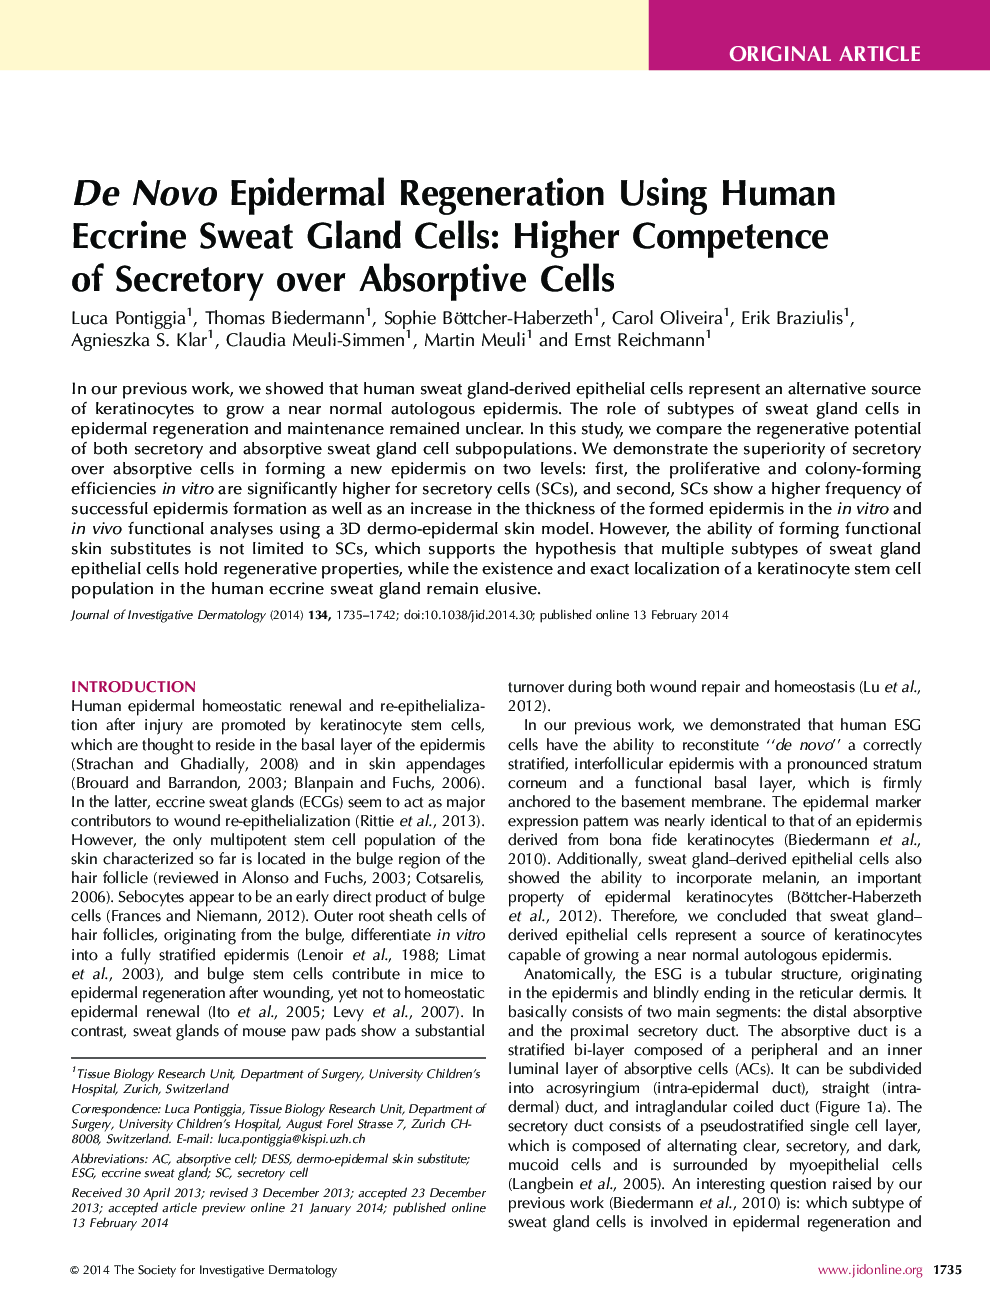 بازسازی ژن ماده ای نوو اپیدرمال با استفاده از سلول های غدد لنفاوی اکسیژن انسانی: صلاحیت بالایی از ترشح بیش از سلول های جذب 